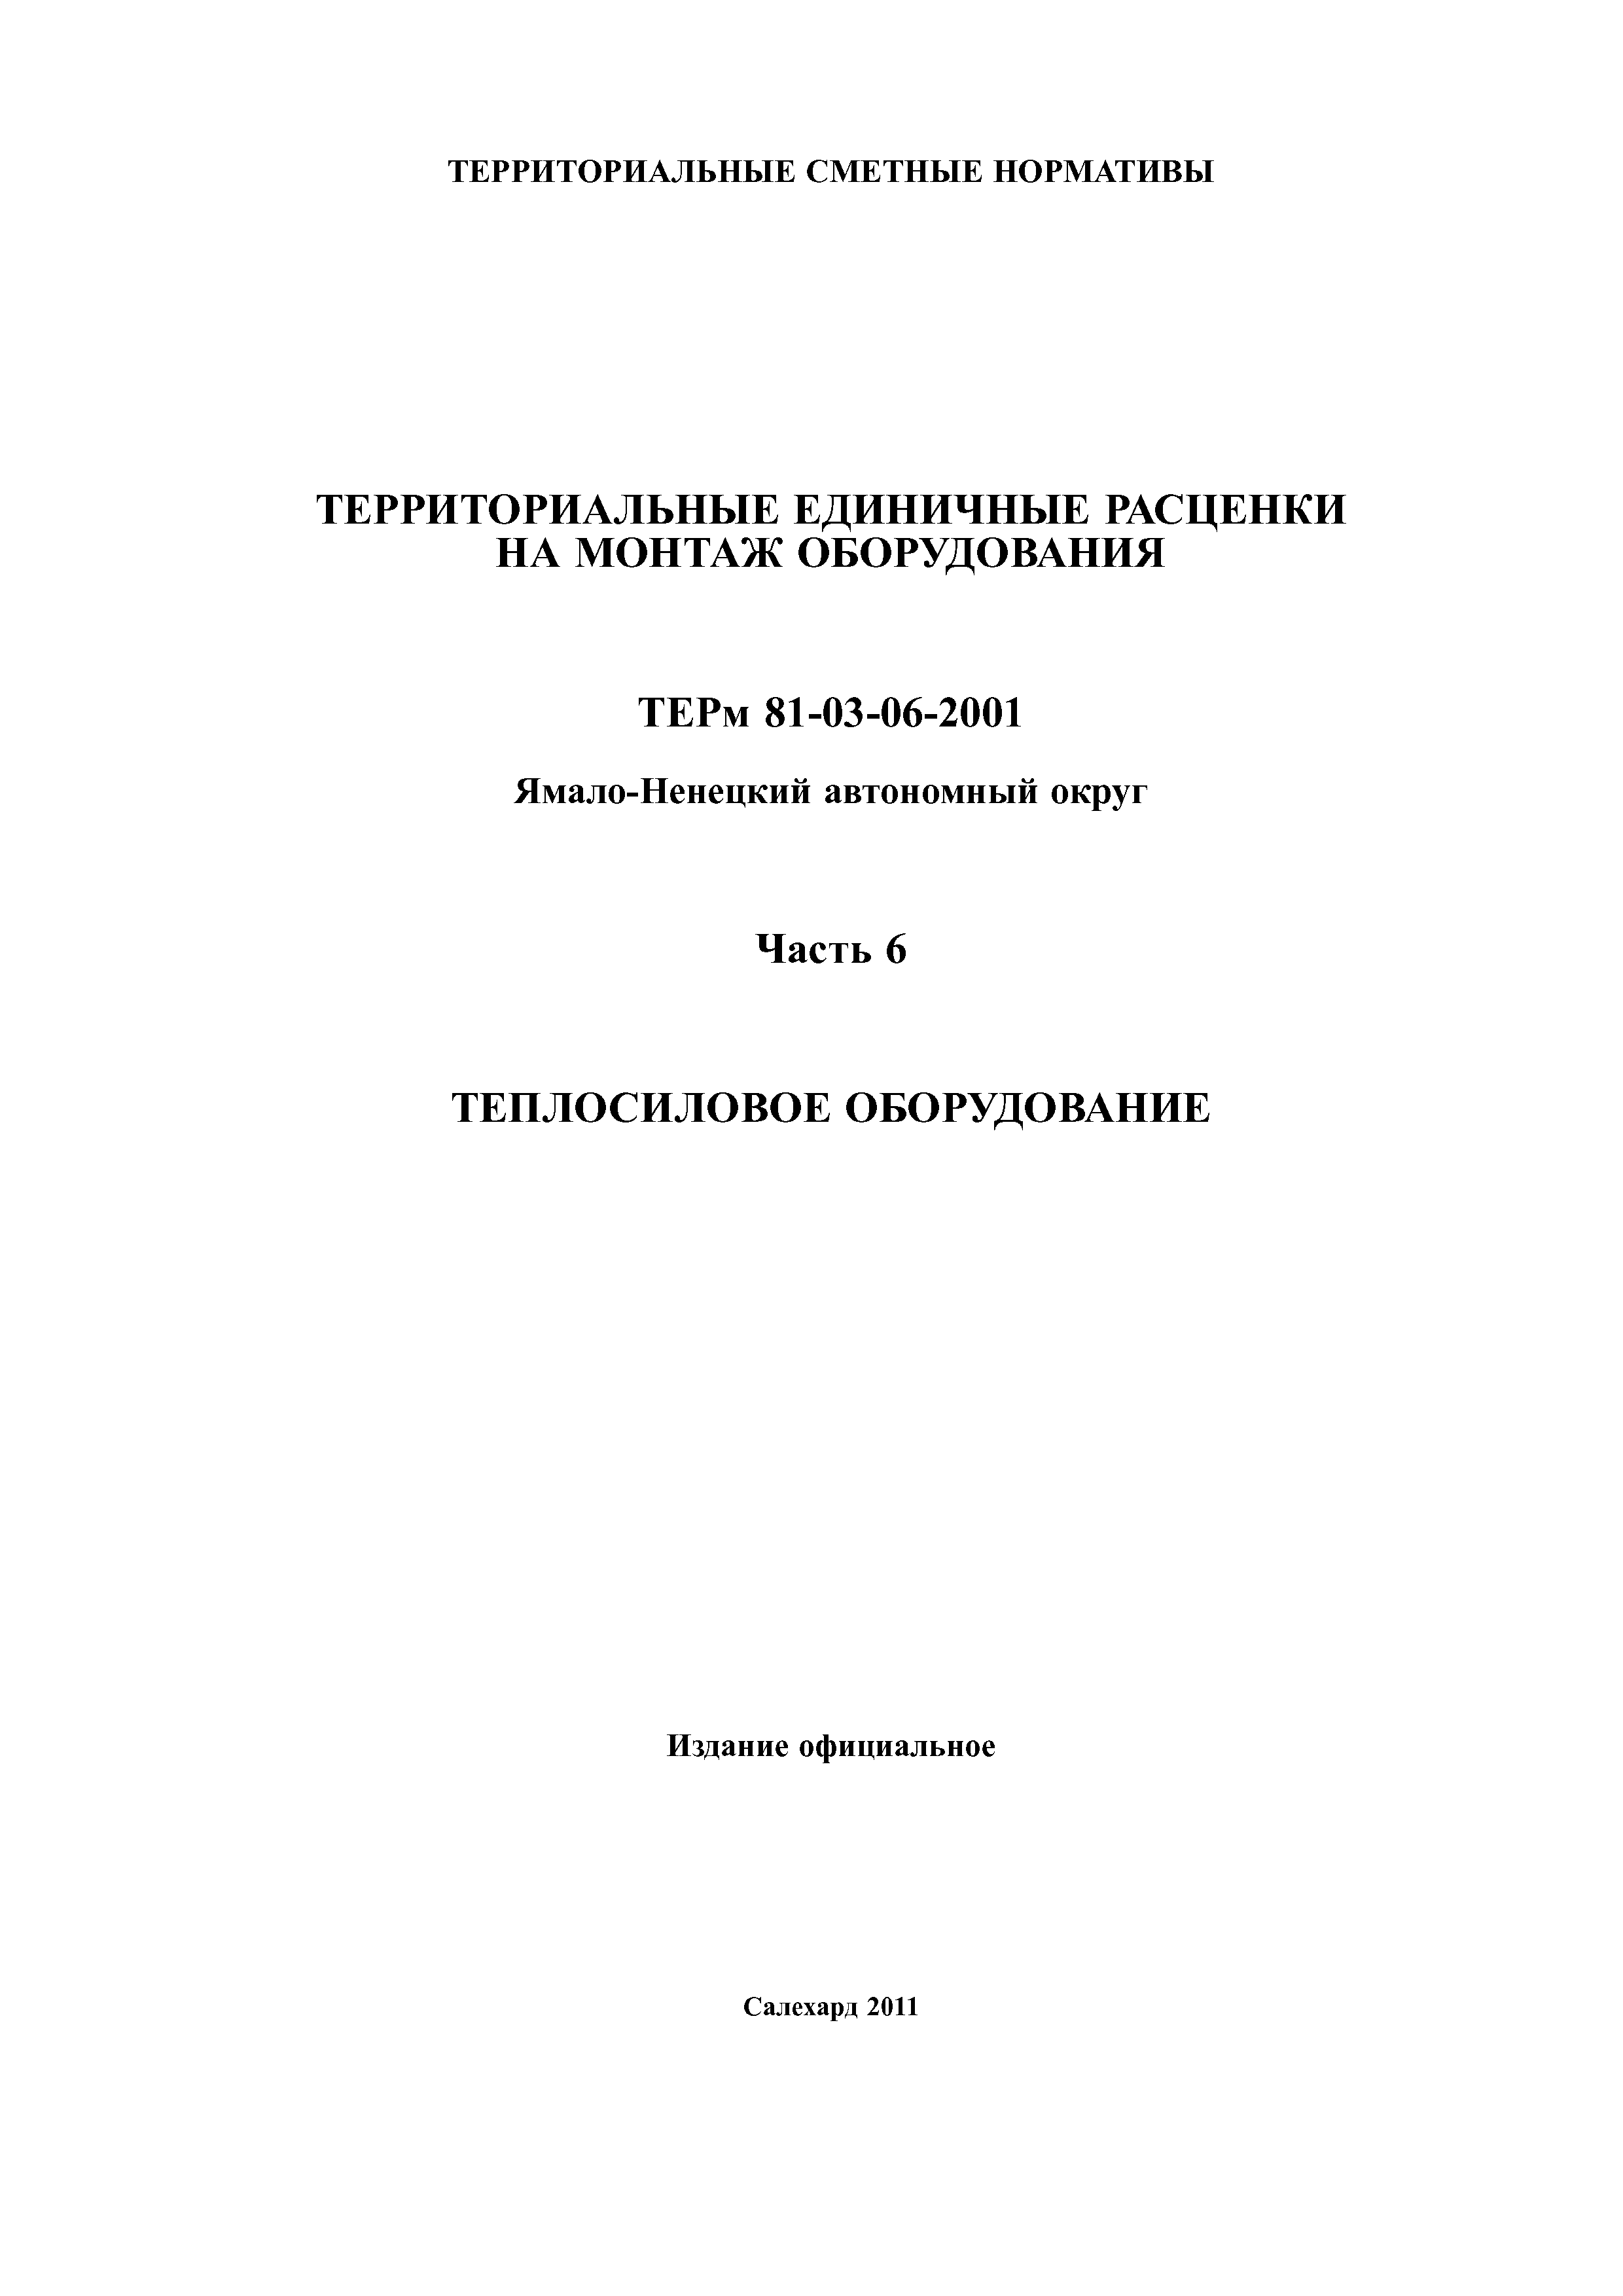 ТЕРм Ямало-Ненецкий автономный округ 06-2001